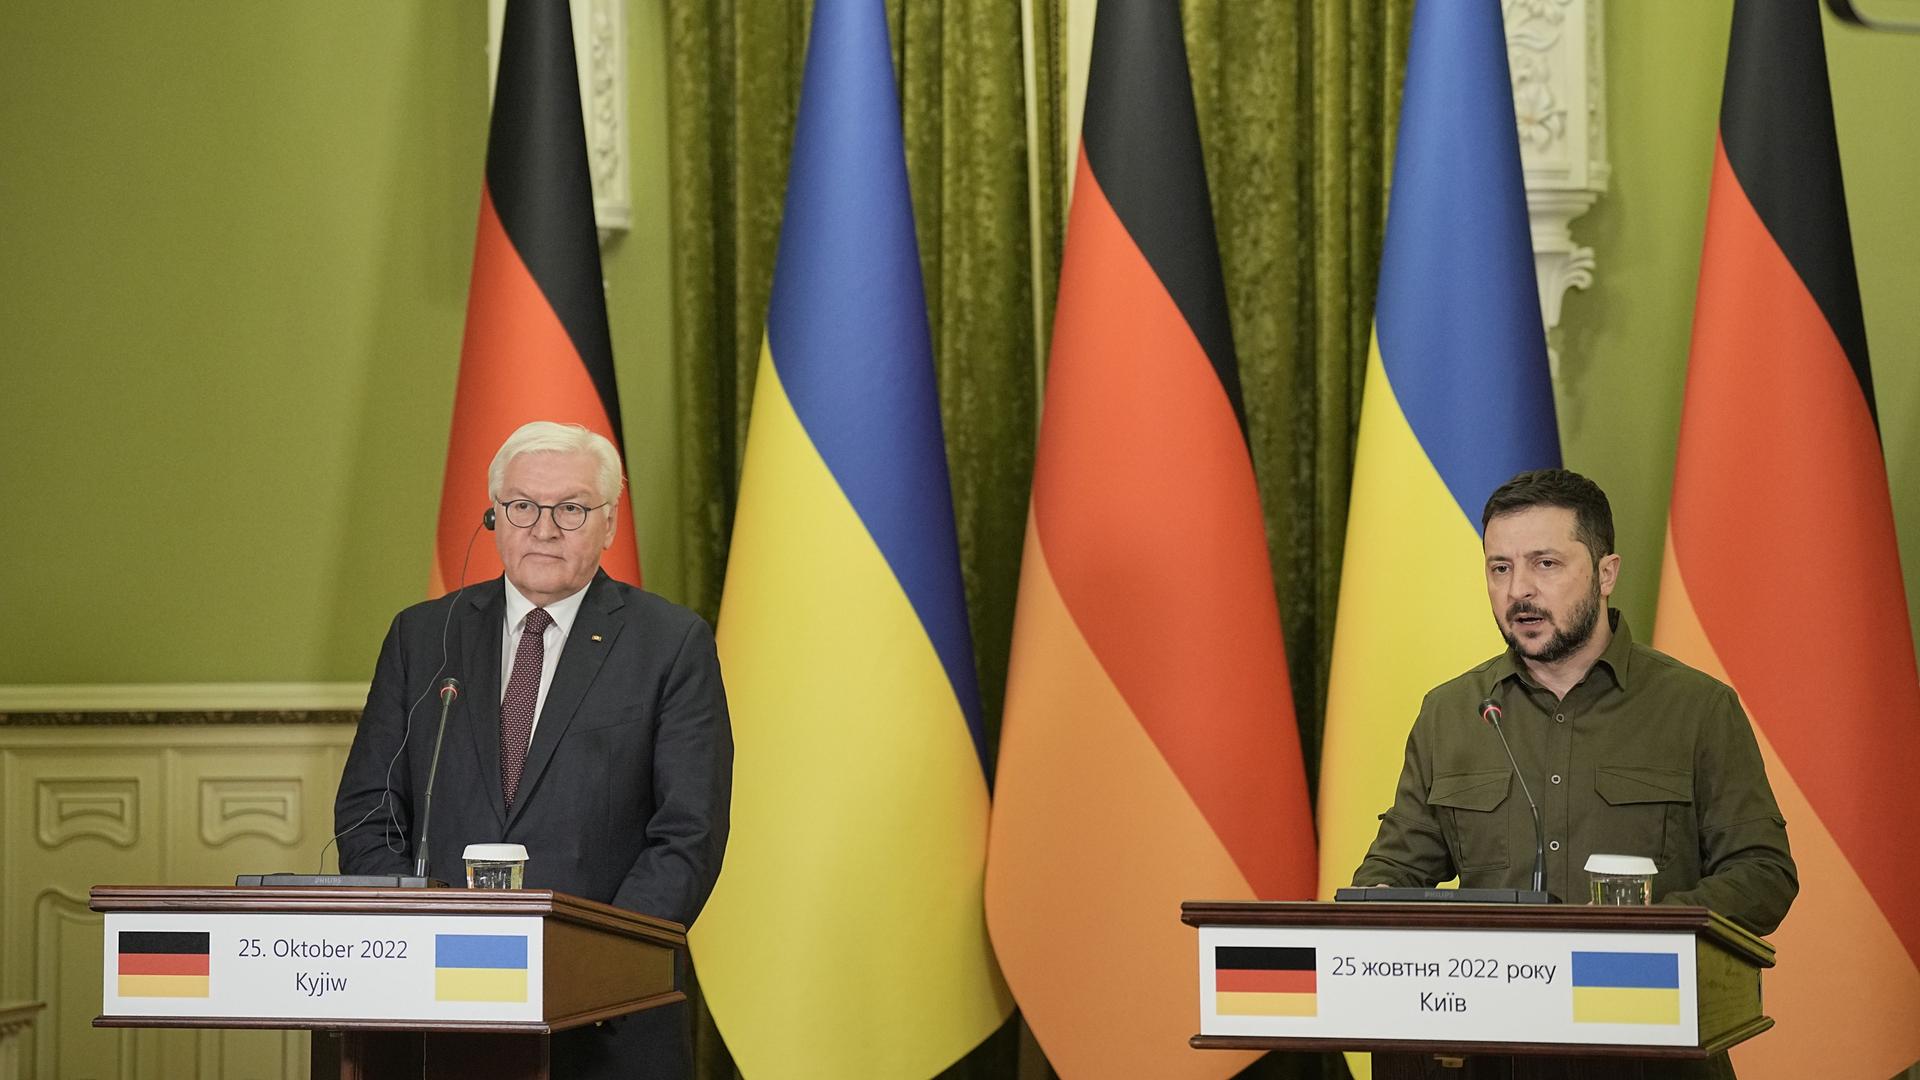 Bundespräsident Steinmeier hat zusammen mit dem ukrainischen Präsidenten Selenskyj eine gemeinsame Pressekonferenz gegeben.